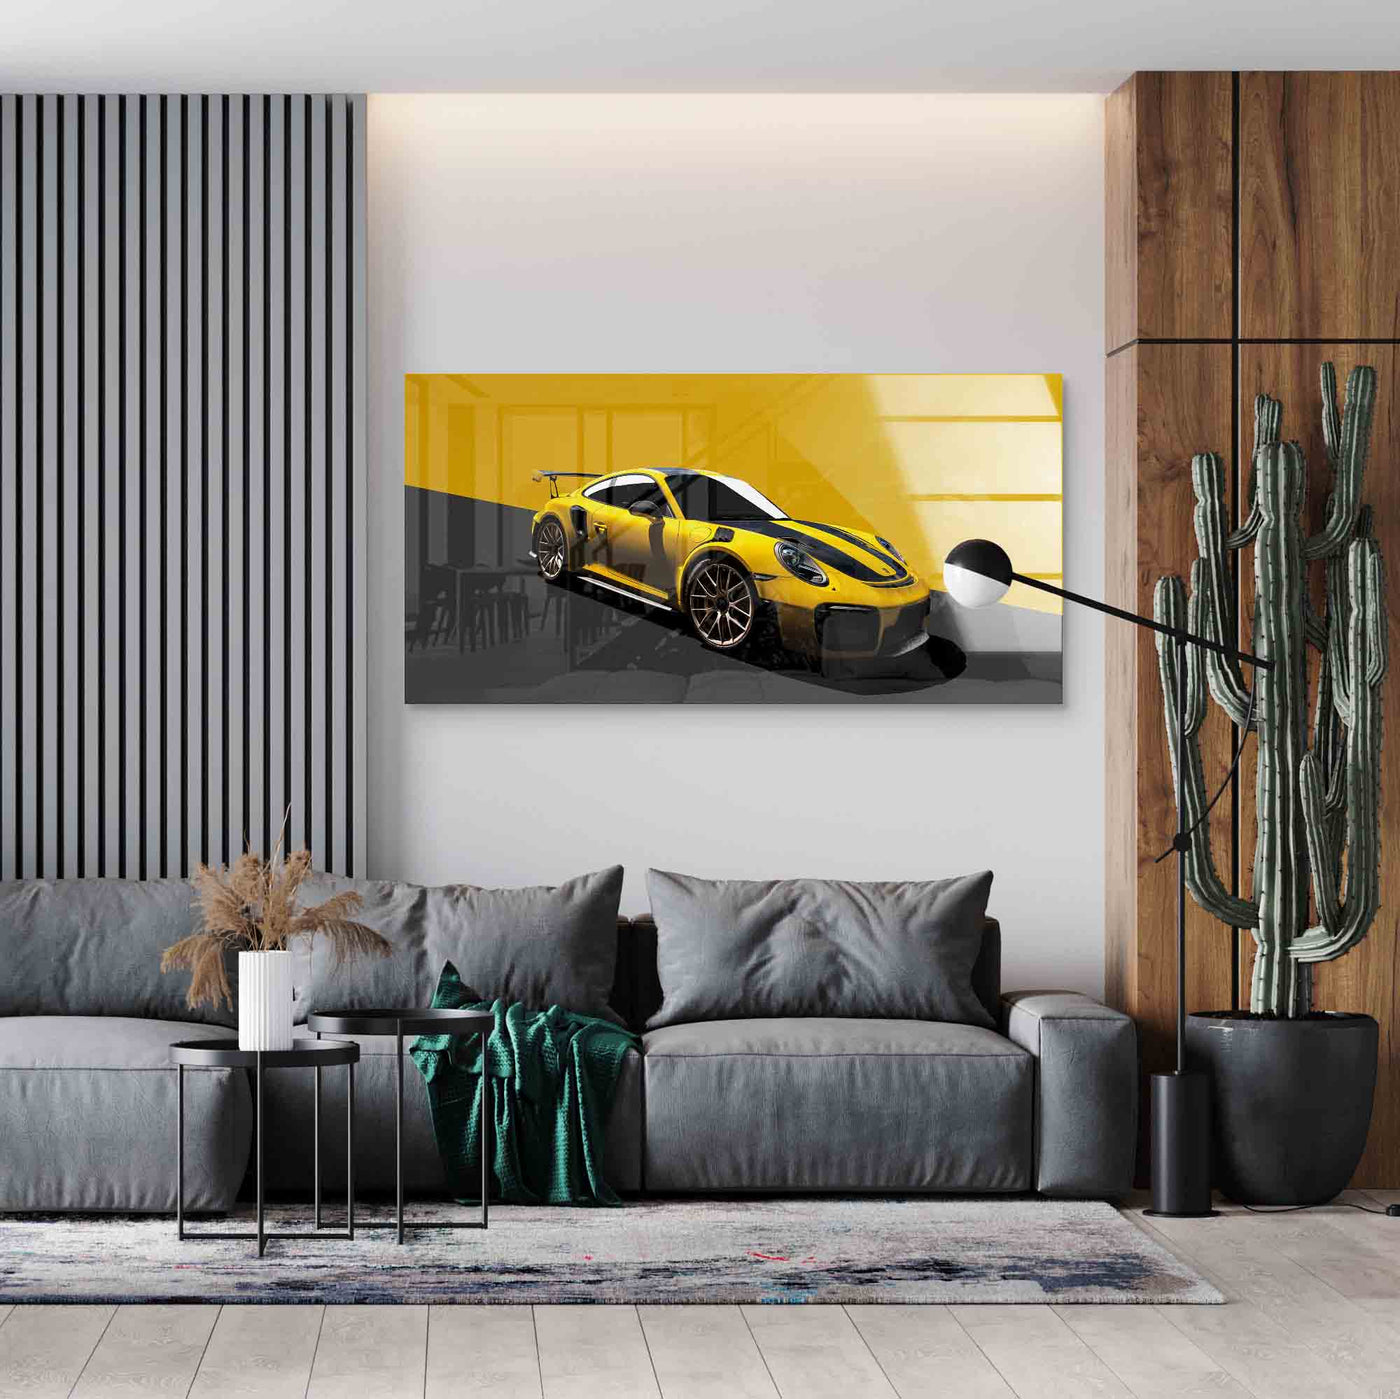 Porsche GT2 RS - Yellow